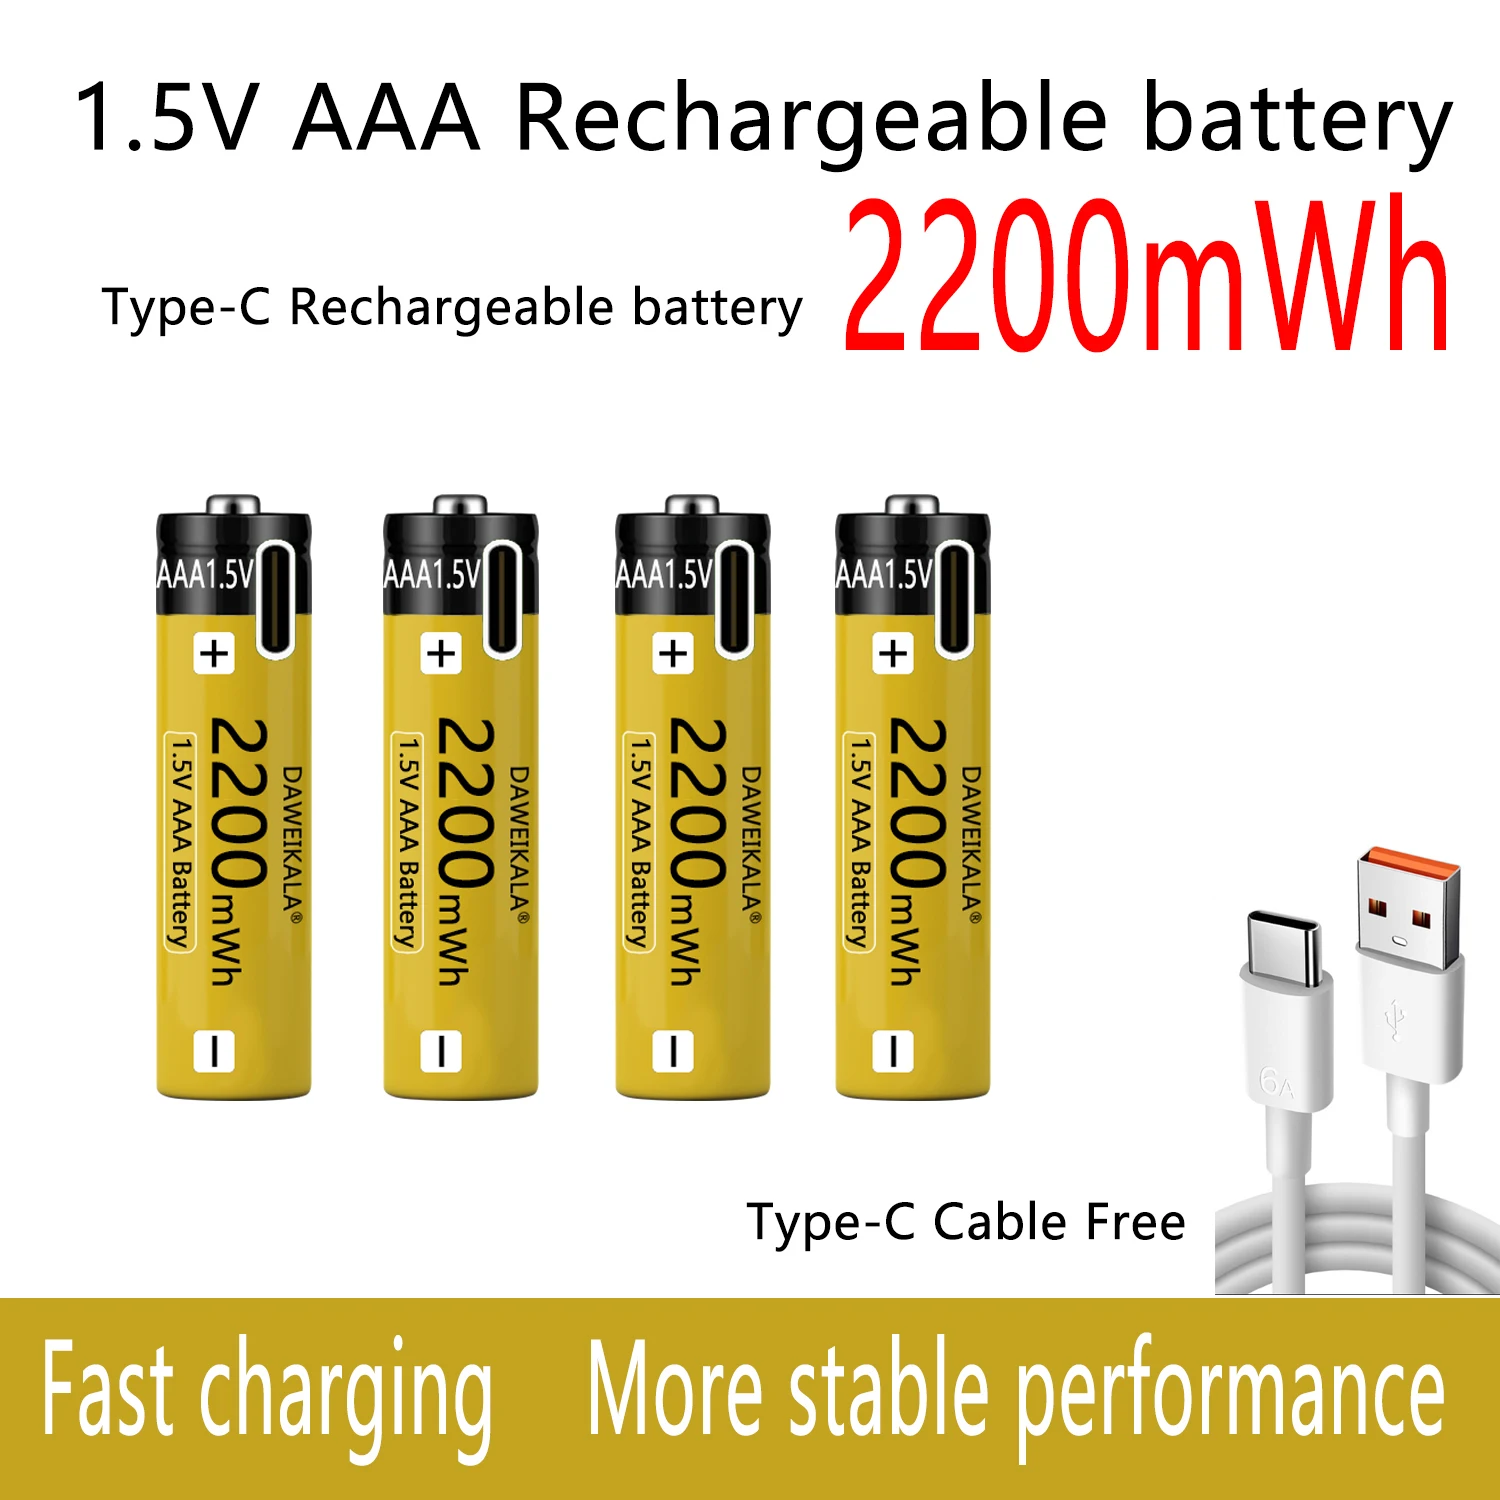 Батарея AAA 1,5 В, аккумуляторная батарея NiZn, стабильная производительность, длительное время использования, аккумуляторы для игрушек, камеры, быстрая зарядка Type-C